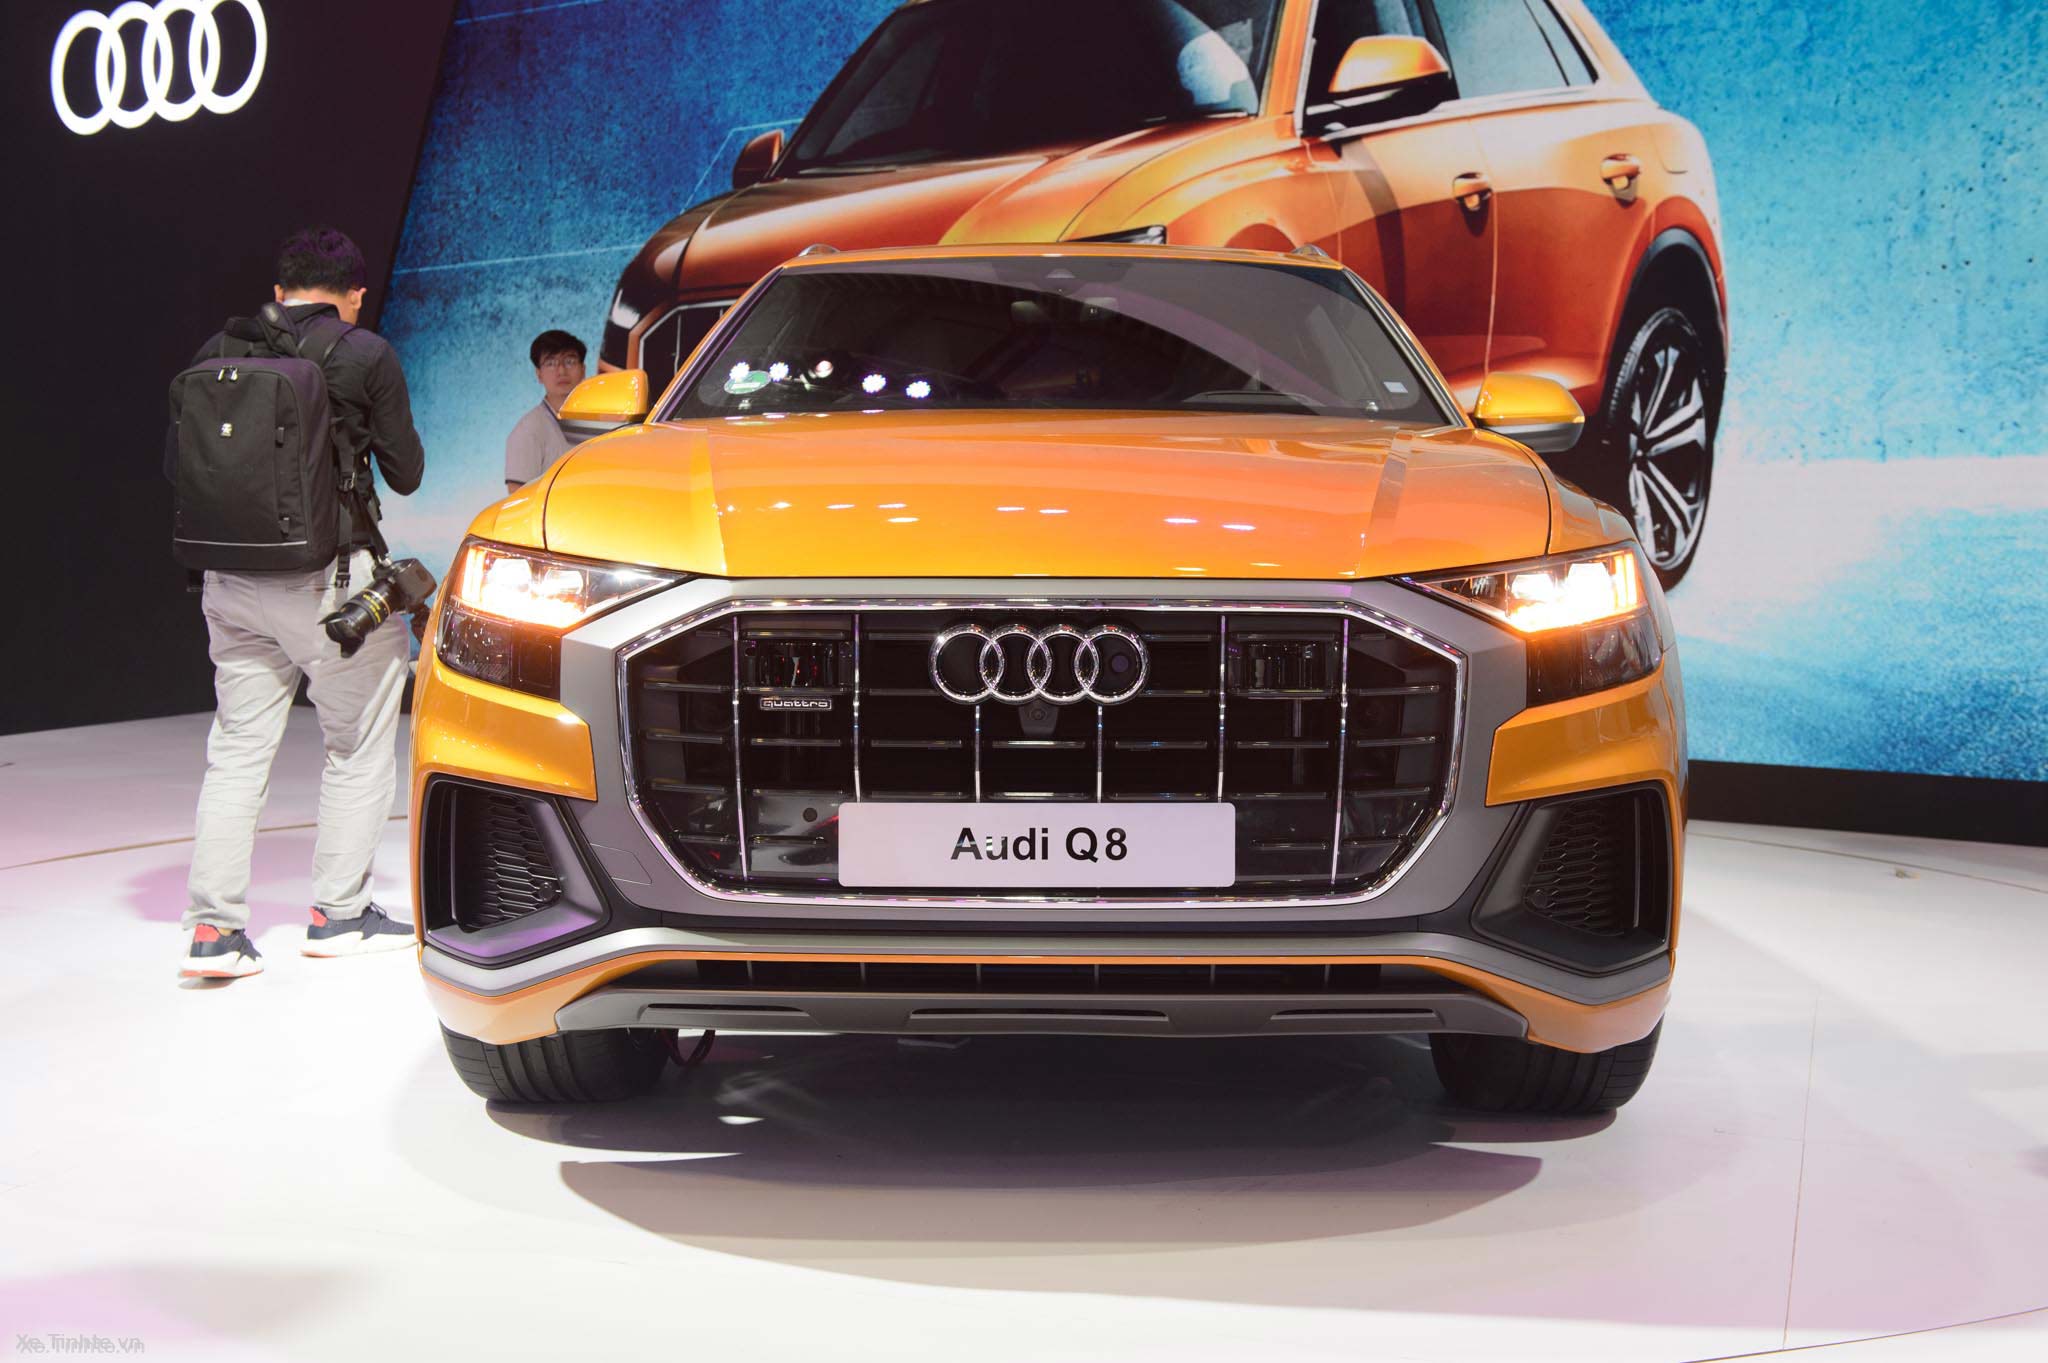 Audi_Q8_xe_tinhte_vms_2018_7.jpg